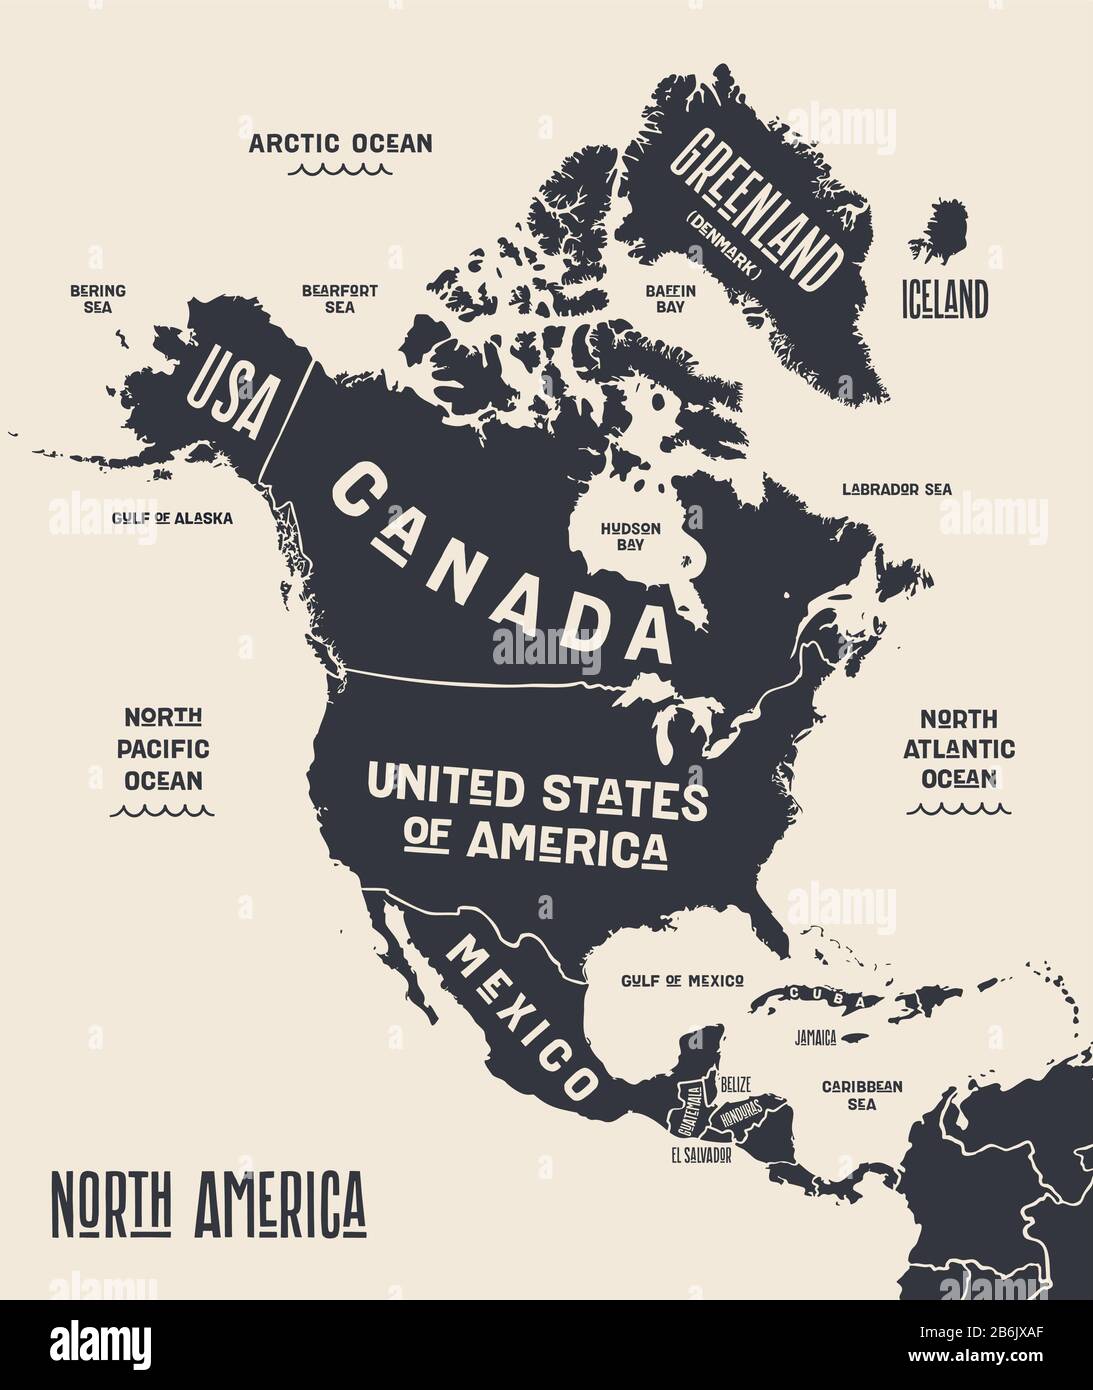 Mapa De América Del Norte Mapa Póster De Norteamérica Mapa Impreso En Blanco Y Negro De 7808